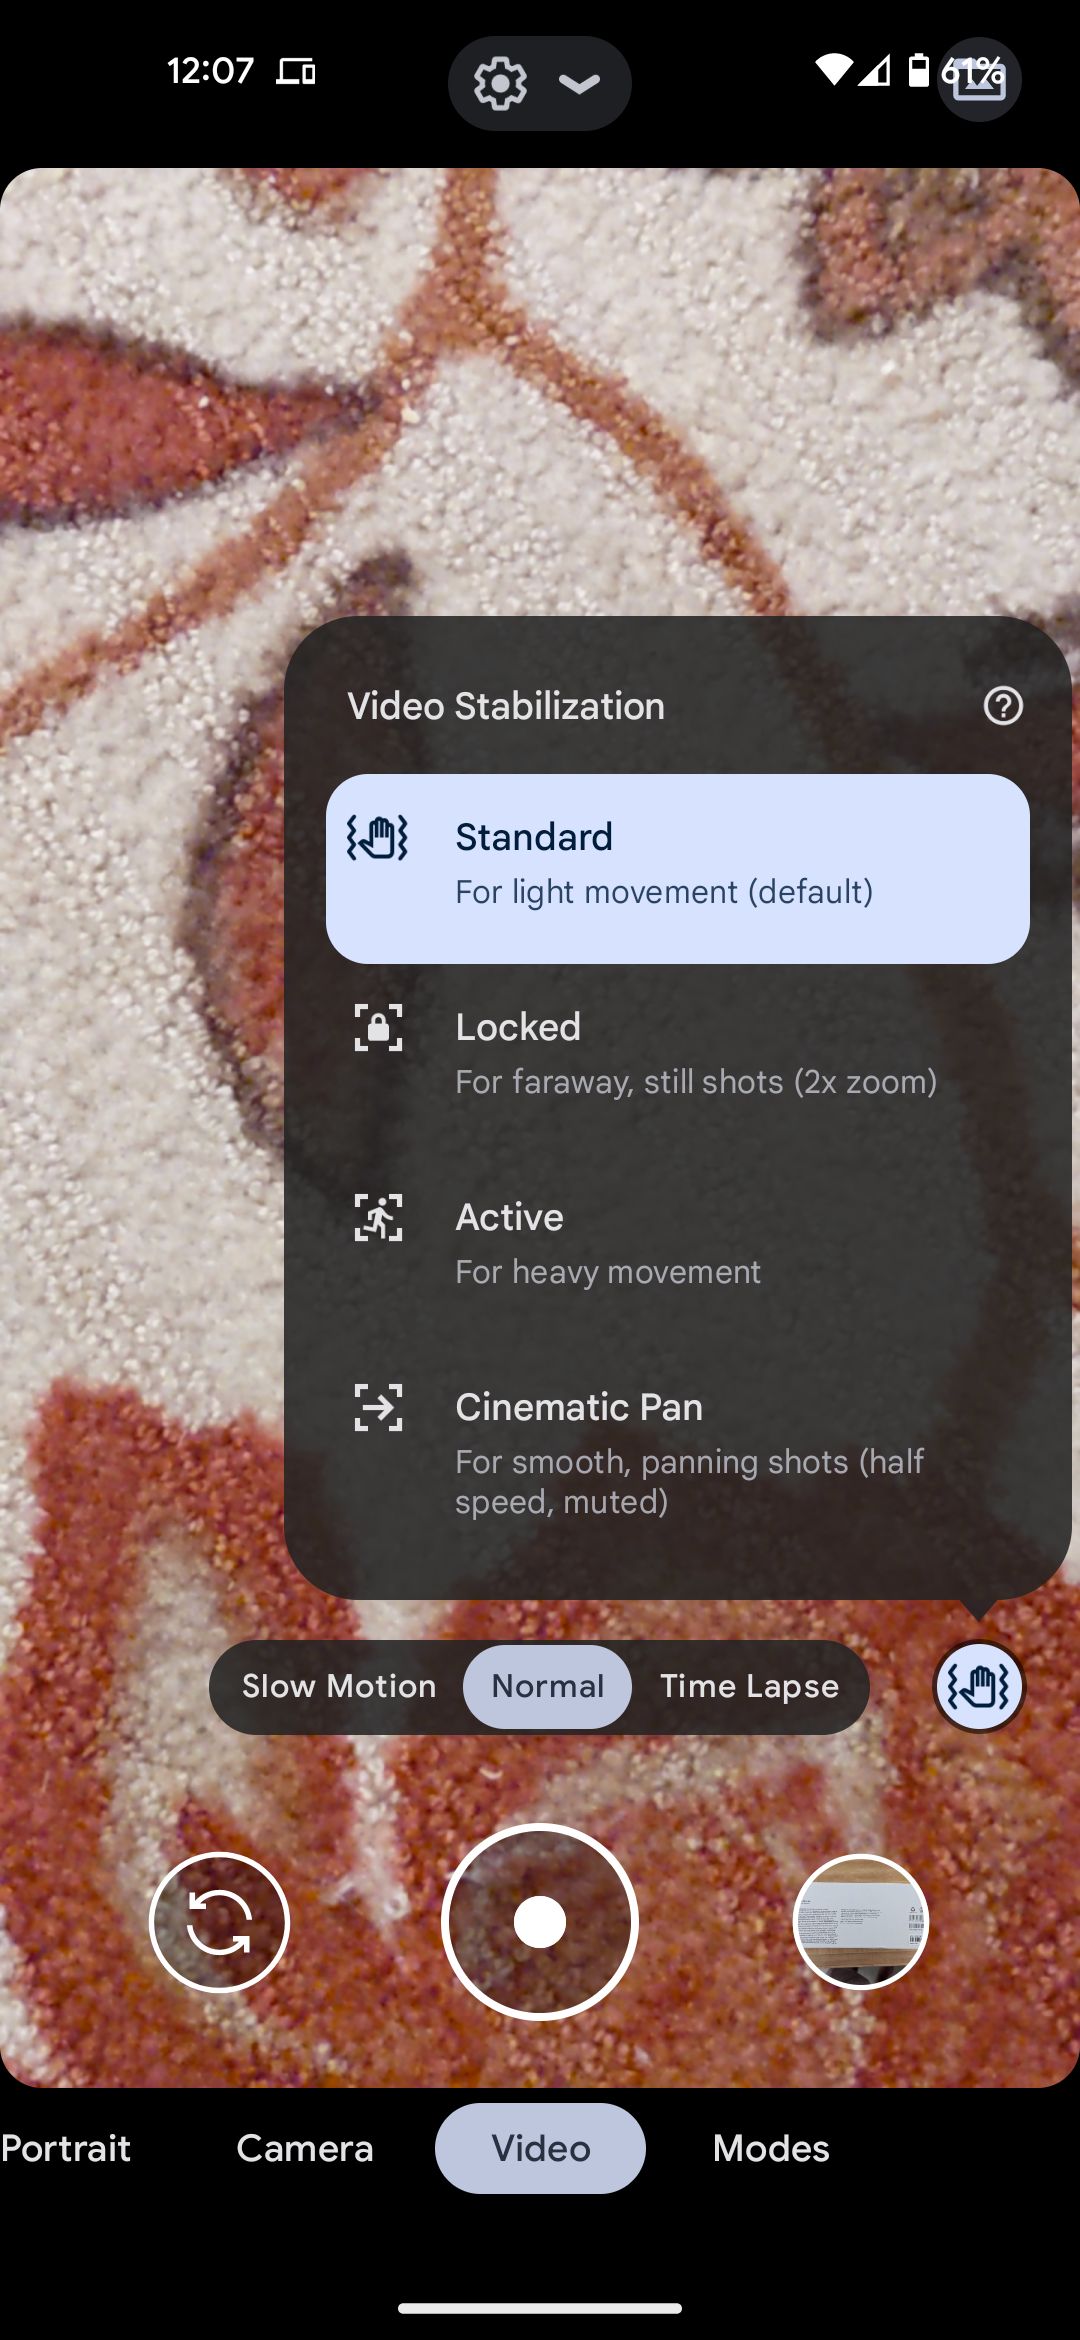 Menu de configurações de estabilização do modo de vídeo do aplicativo da câmera do Google.